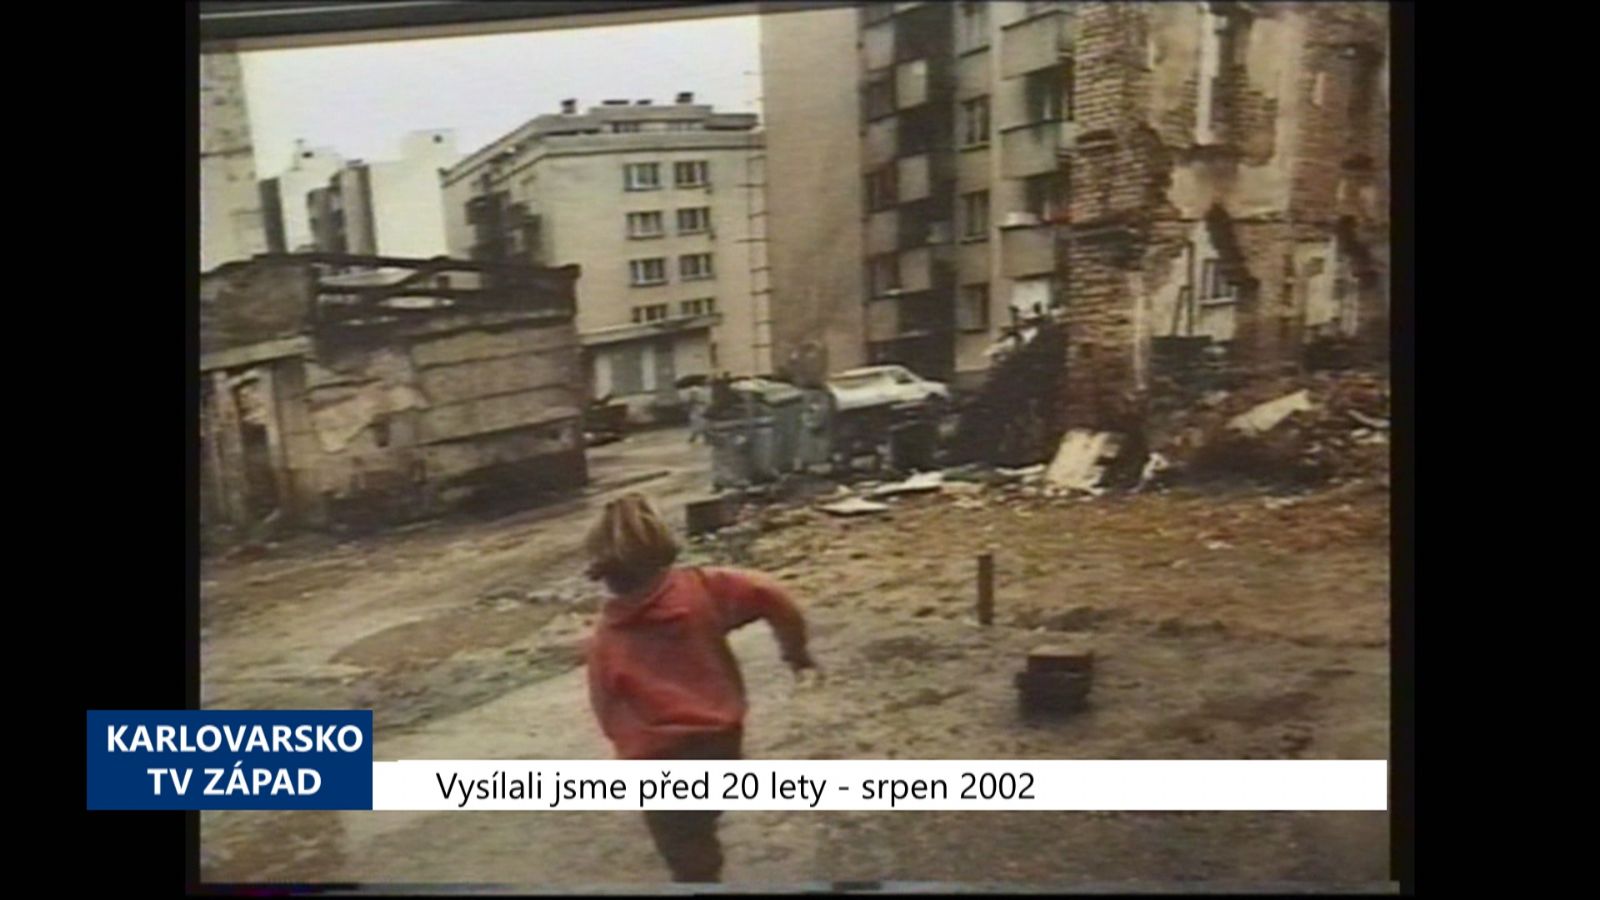 2002 – Cheb: Výstava přibližuje důsledky války v Jugoslávii (TV Západ)